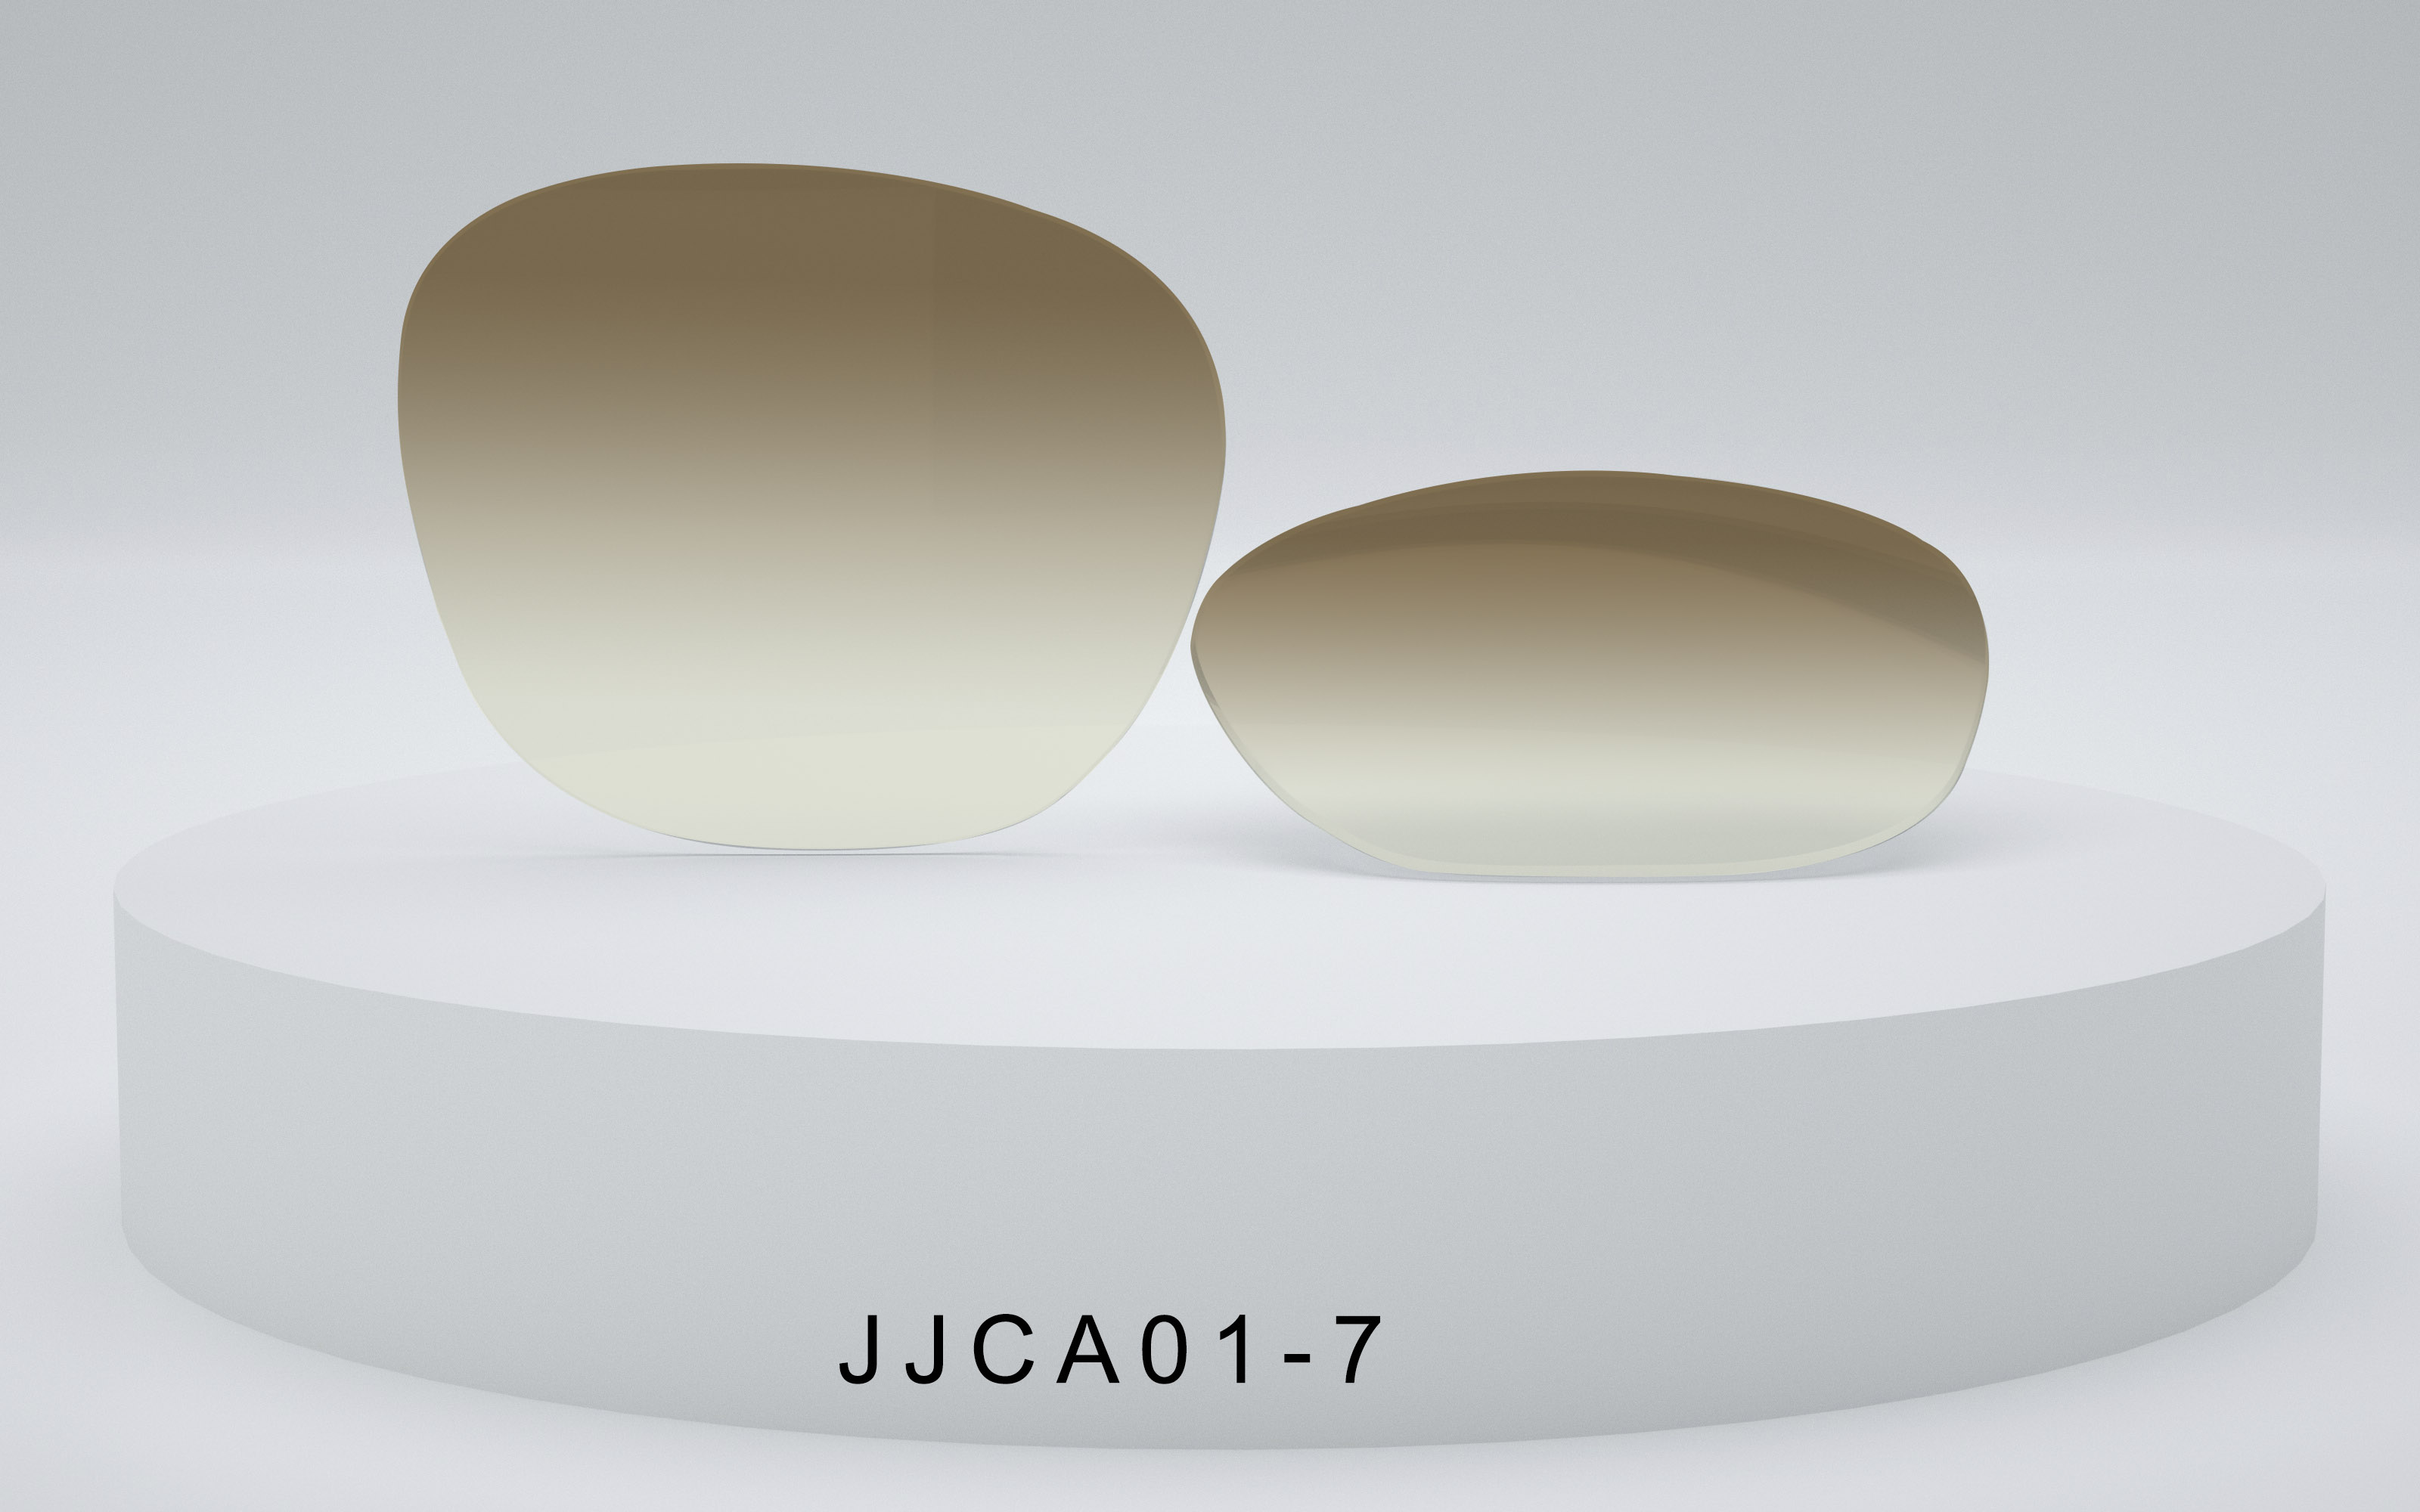 JJCA01-7